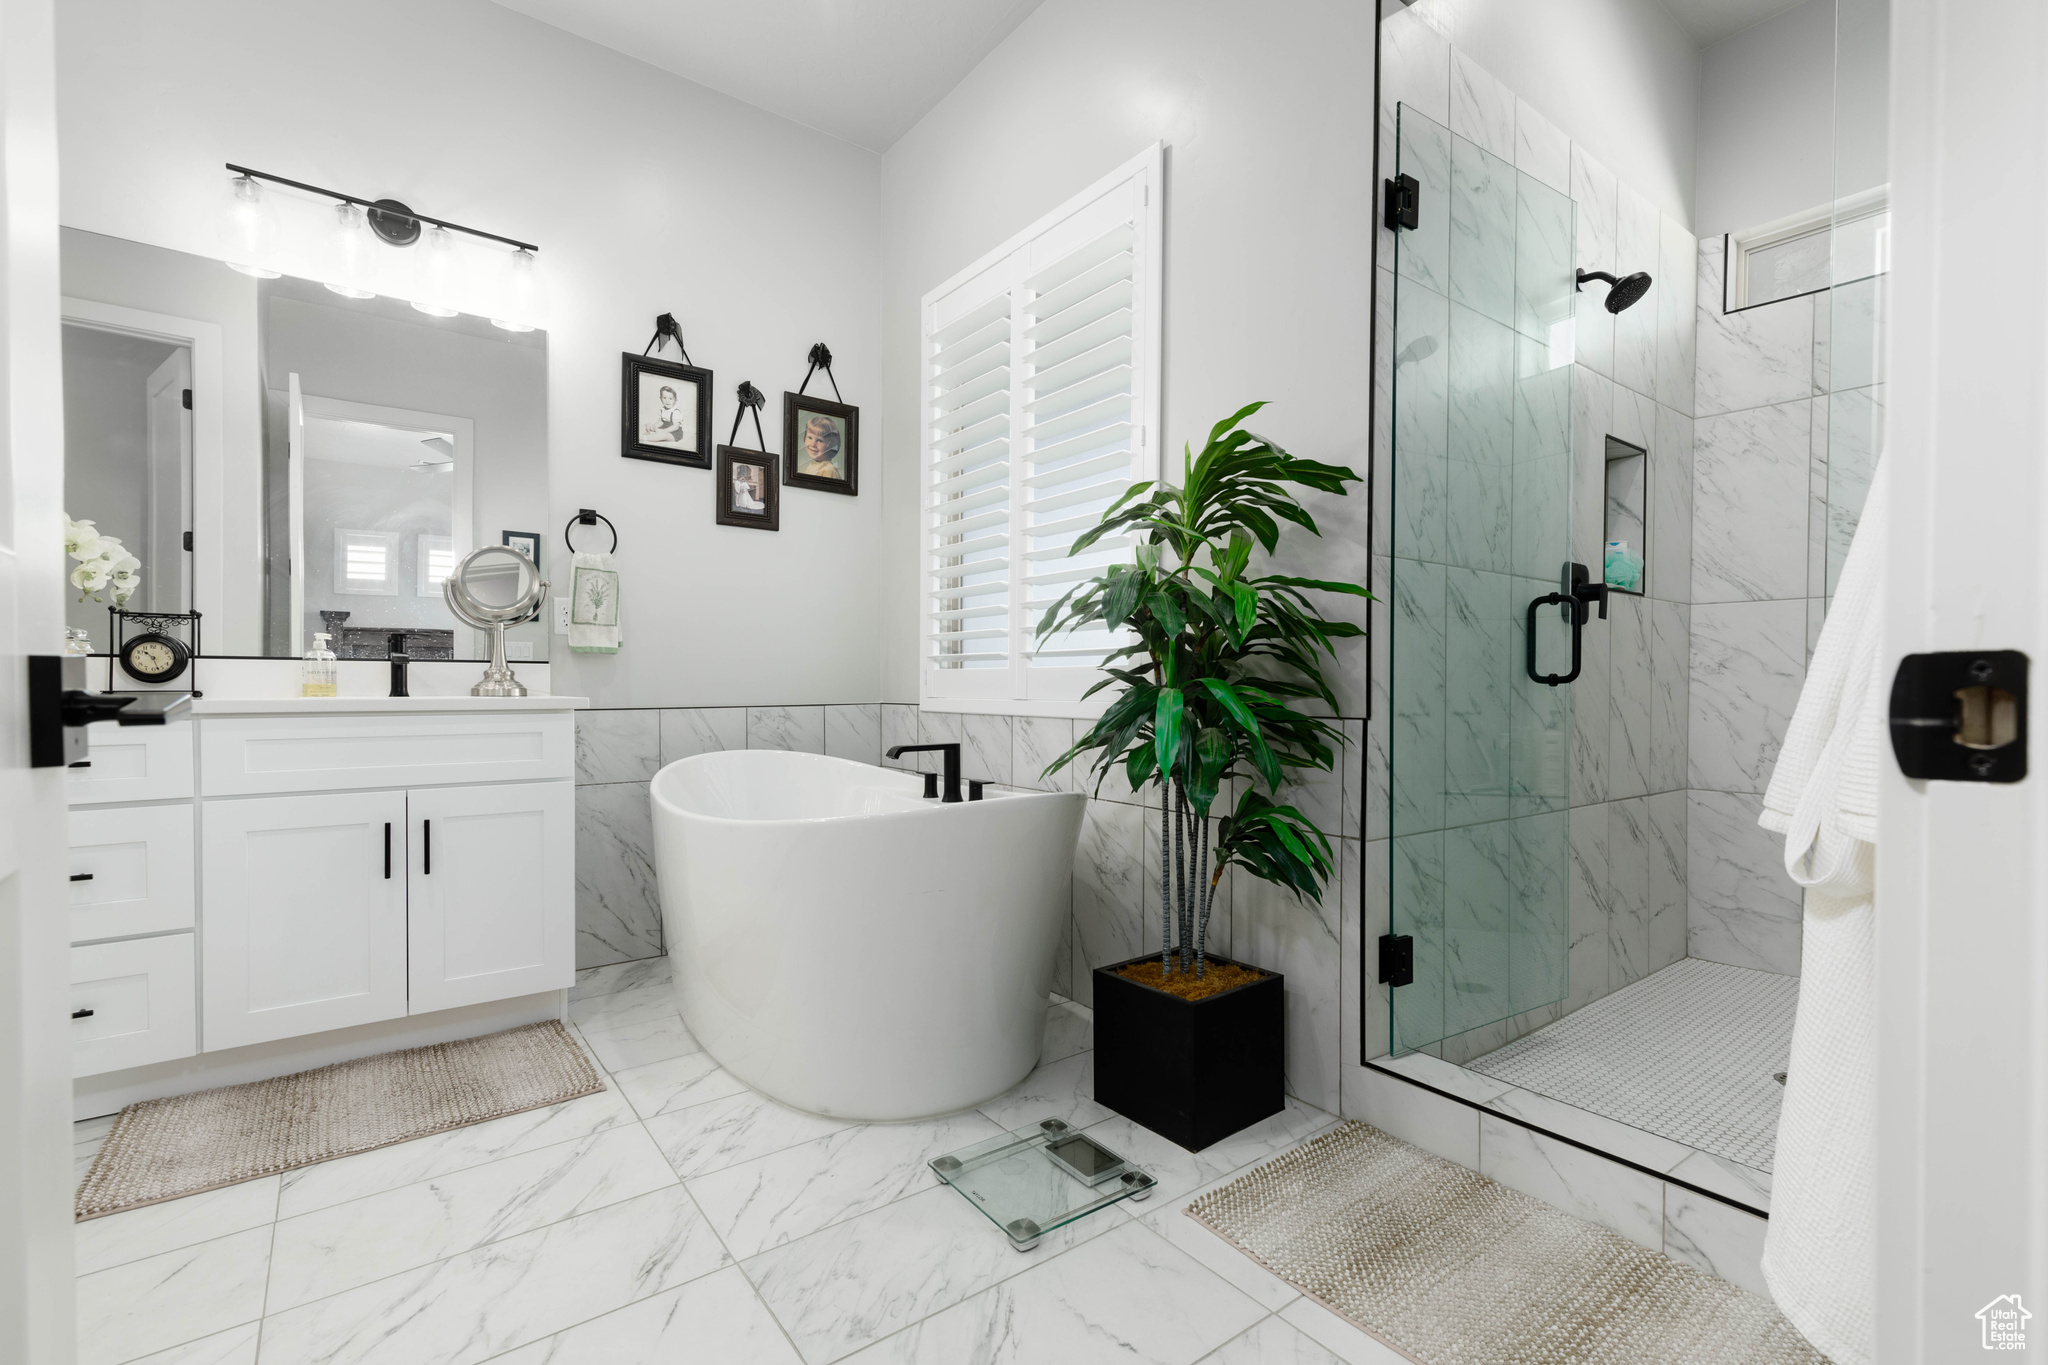 Bathroom with vanity, tile floors, tile walls, and plus walk in shower